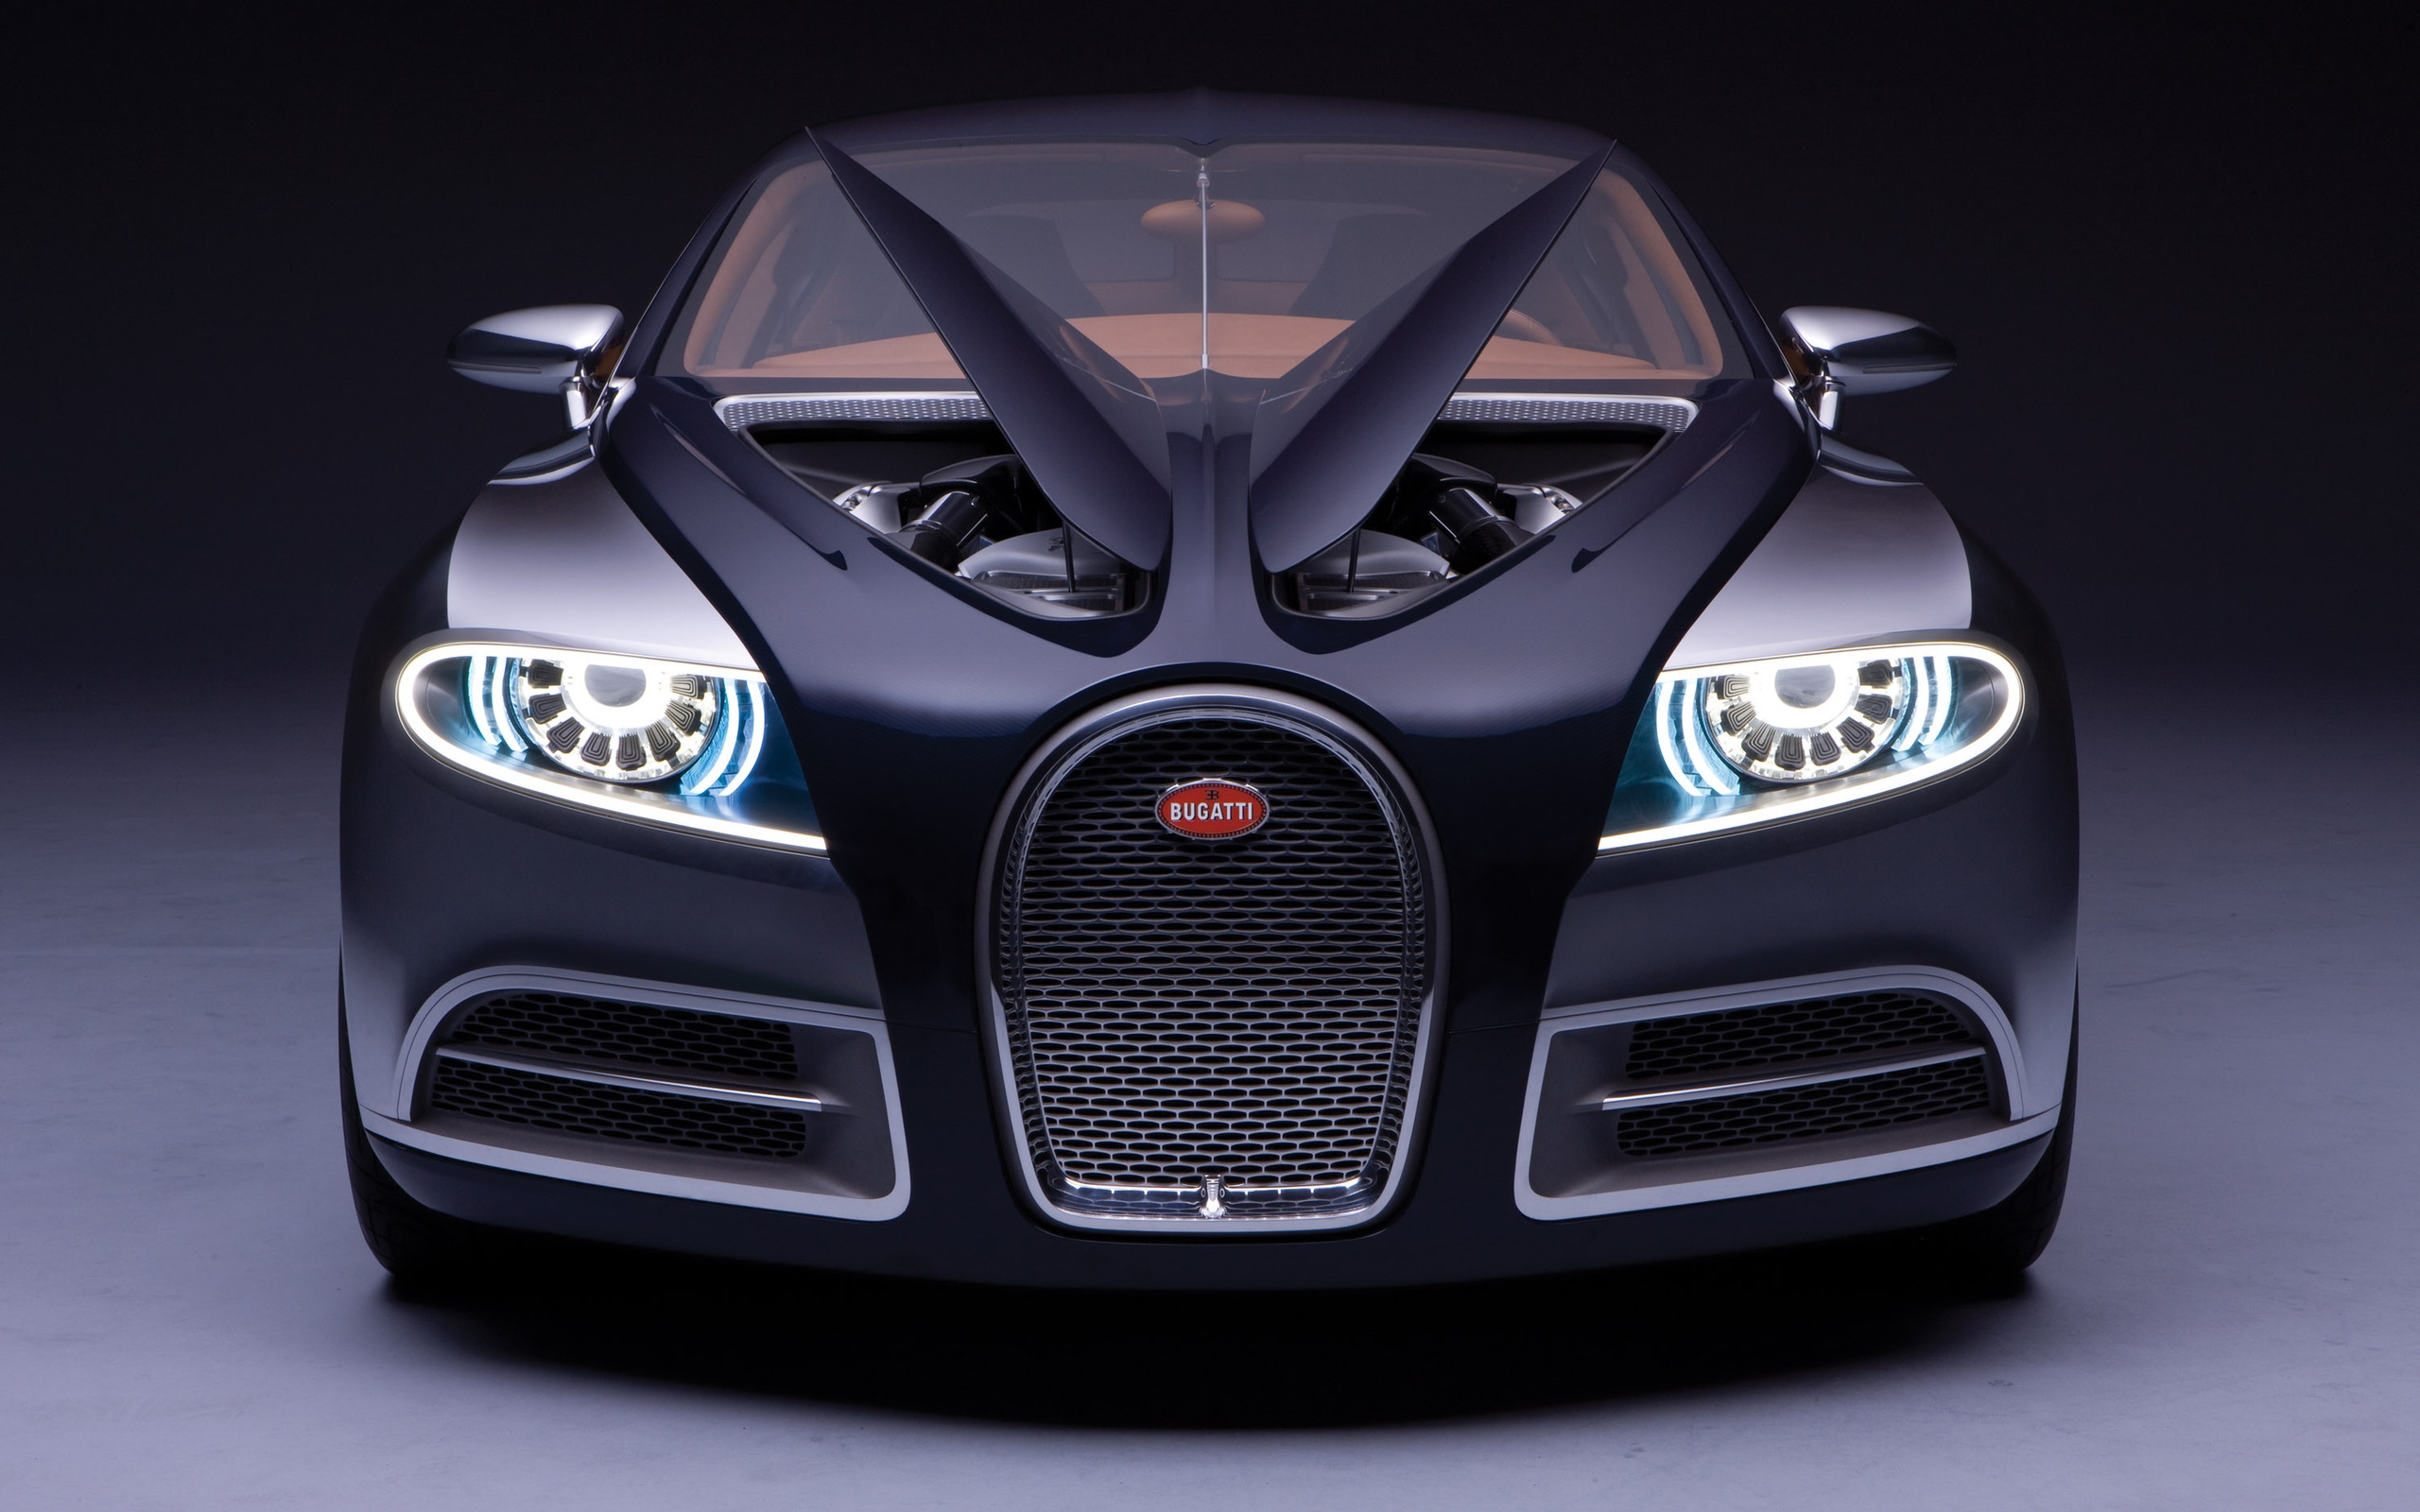 Bugatti for 2560 x 1600 widescreen resolution